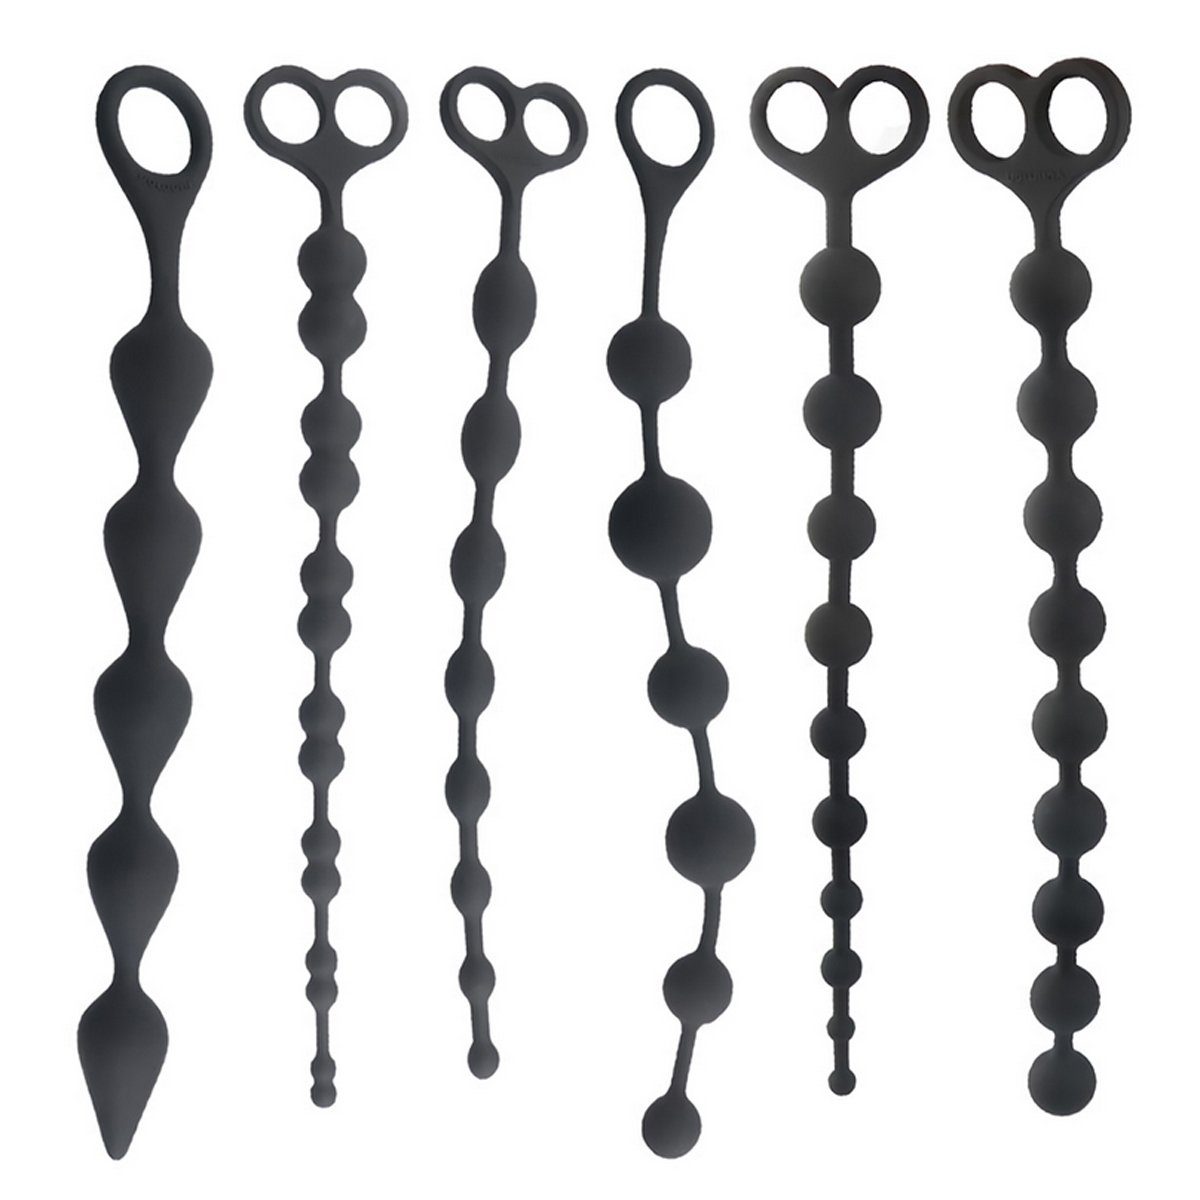 TPFSecret Analkette für Männer und Frauen, ergonomische große 29,5cm Anal Perlen Kette, mit 14 Kugeln und unterschiedlichem Durchmesser - Farbe: Schwarz